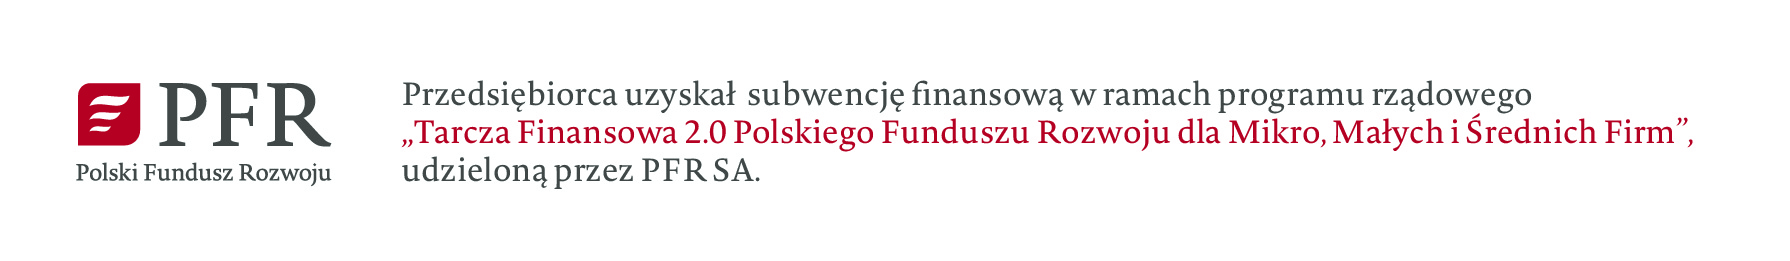 Przedsiębiorca uzyskał subwencję nansową w ramach programu rządowego
„Tarcza Finansowa 2.0 Polskiego Funduszu Rozwoju dla Mikro, Małych i Średnich Firm”,
udzieloną przez PFR SA.